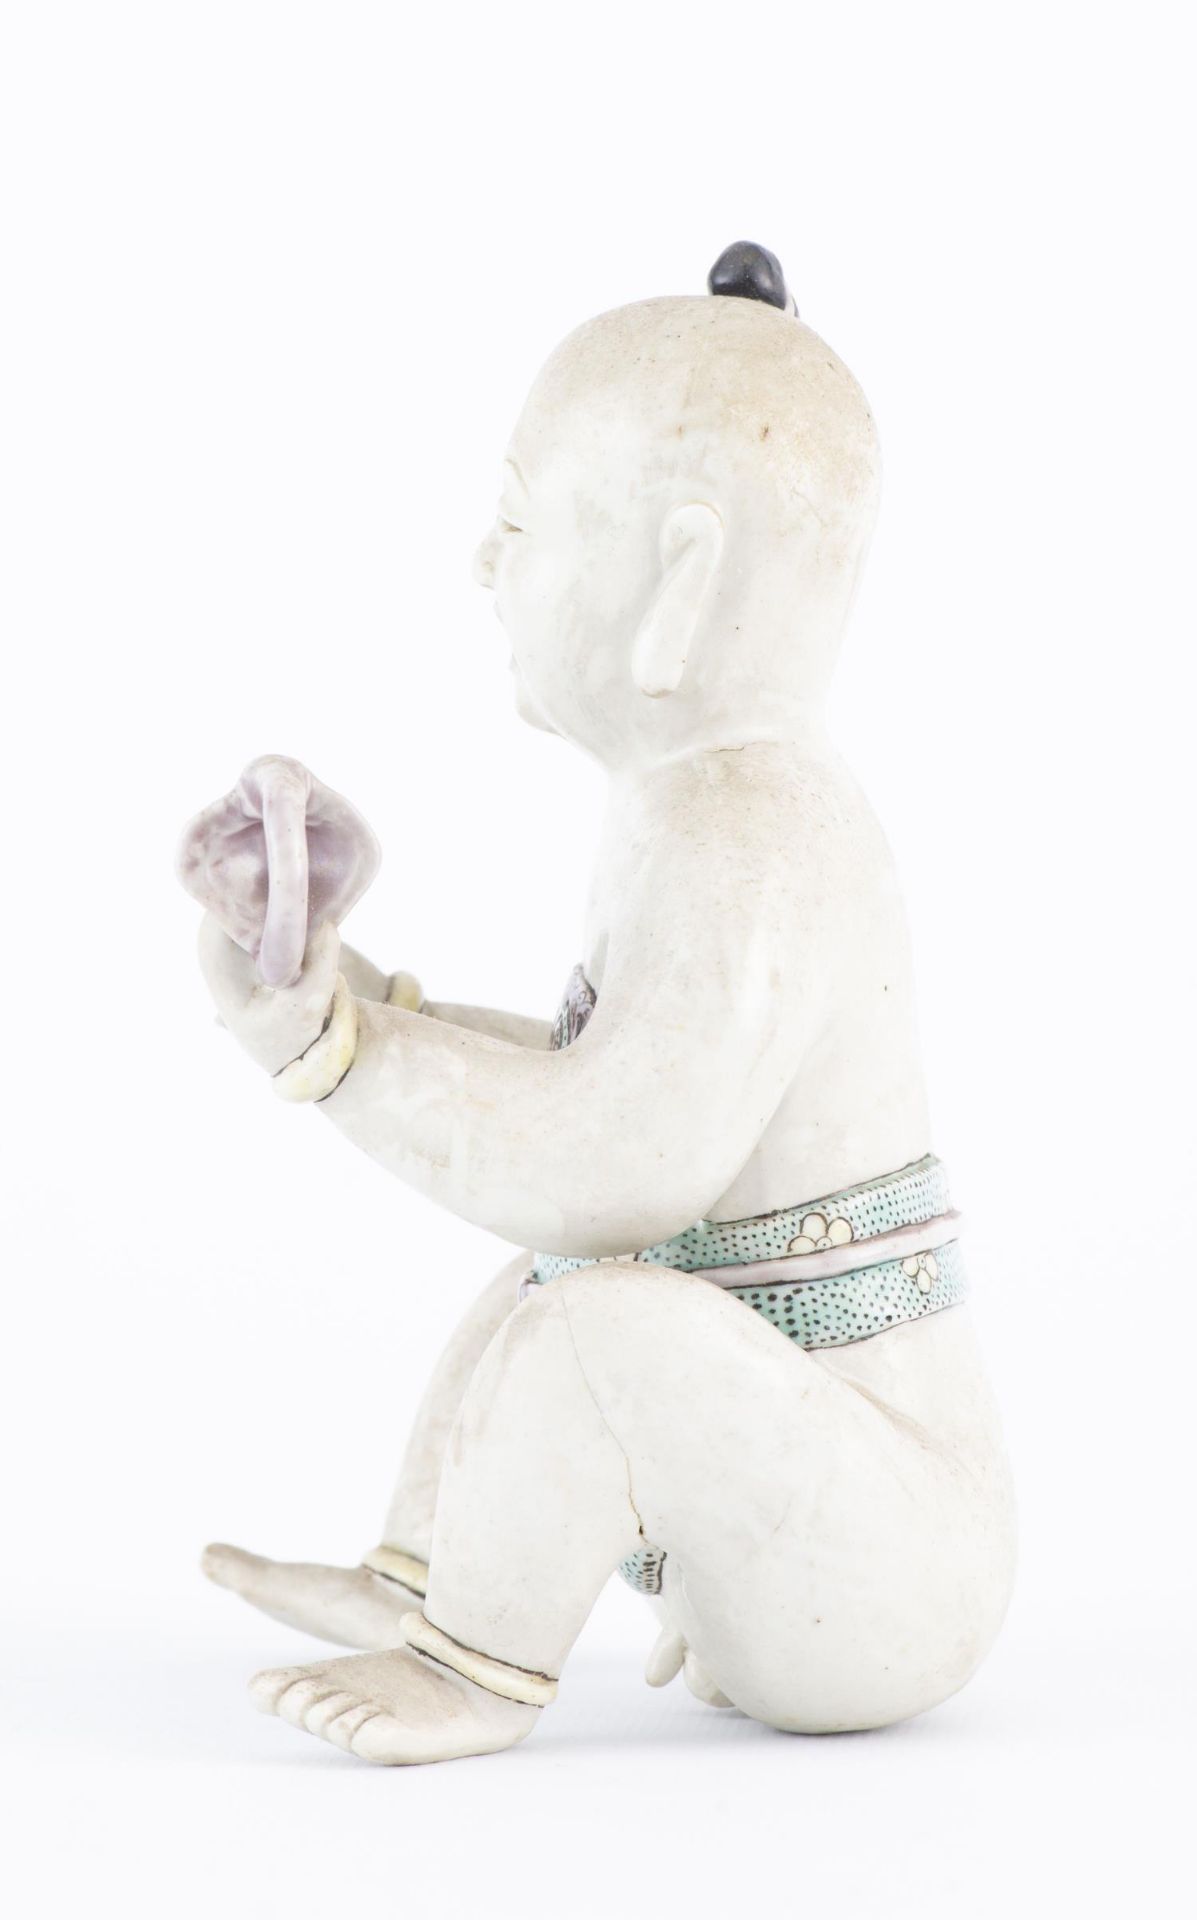 Statuette d'un Hoho (jeune garçon) assis en biscuit - Image 7 of 18